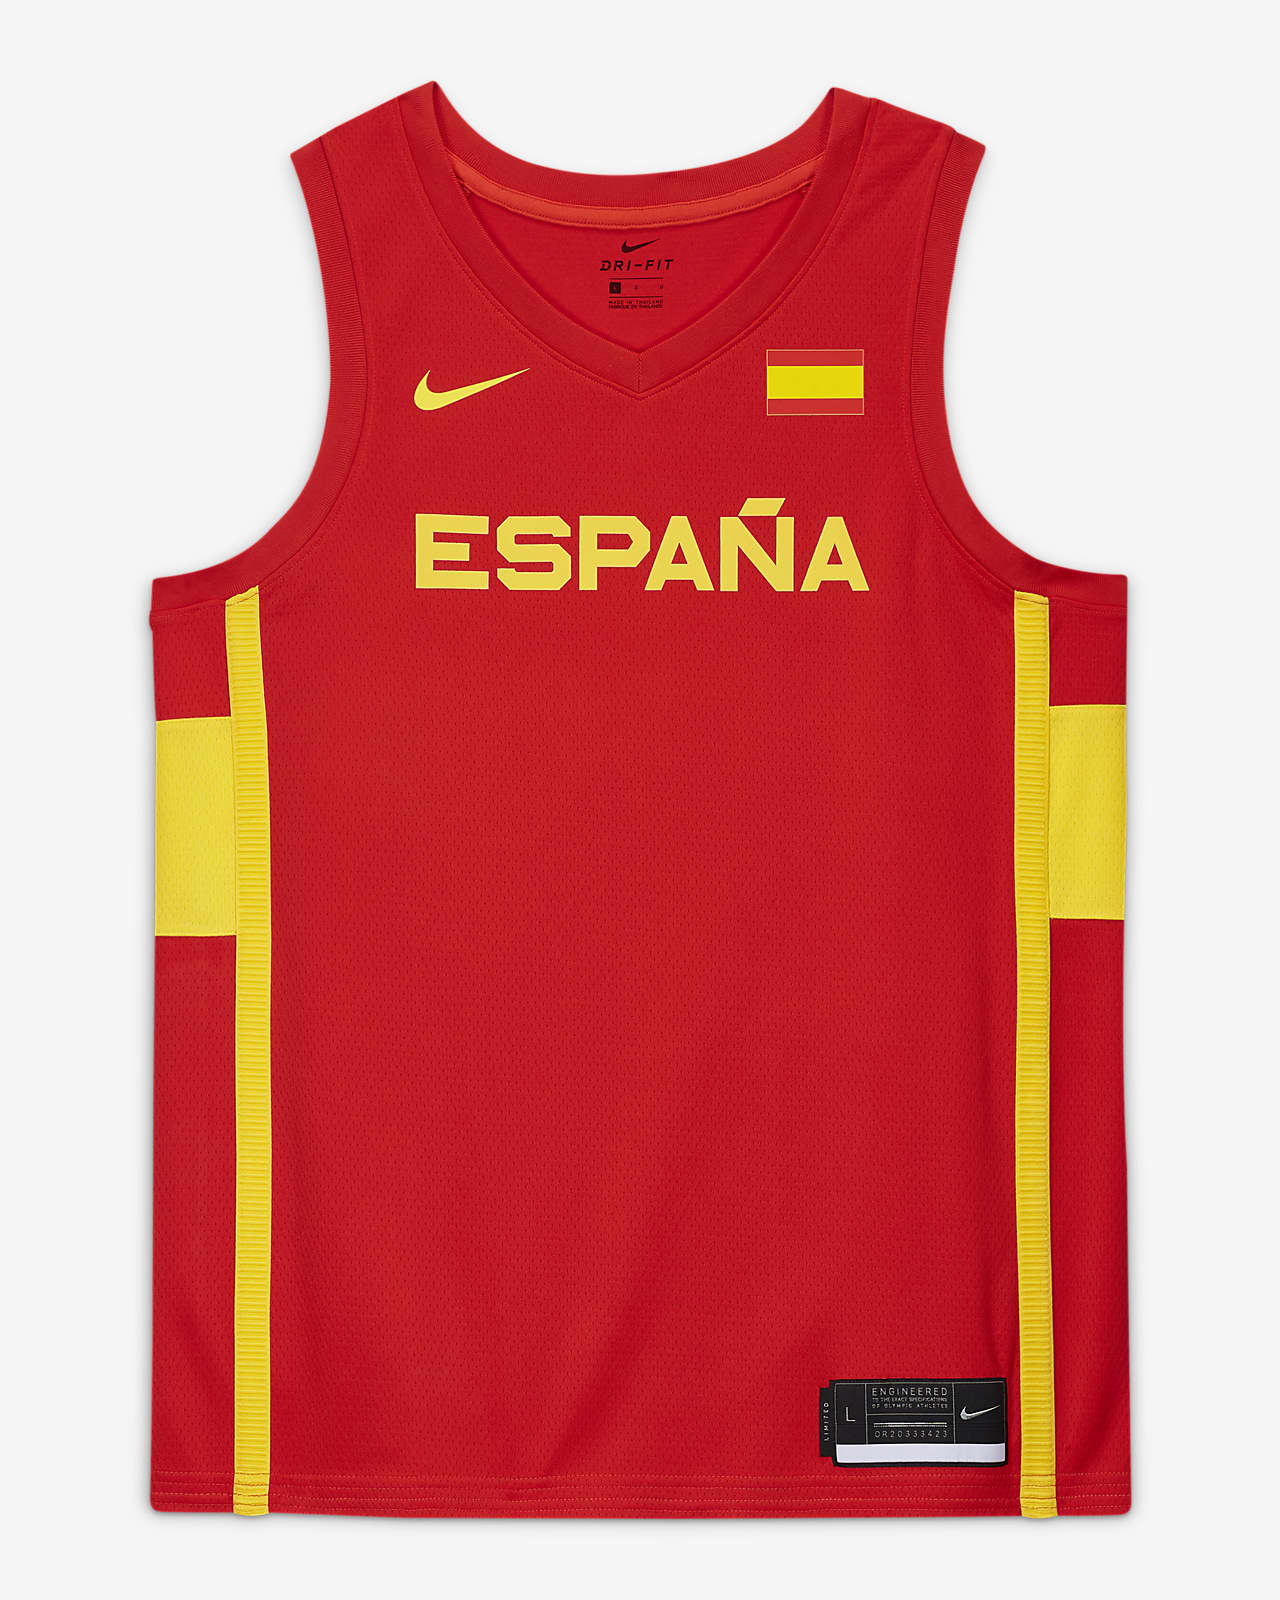 Spanien Nike (Road) Limited Nike Herren-Basketballtrikot